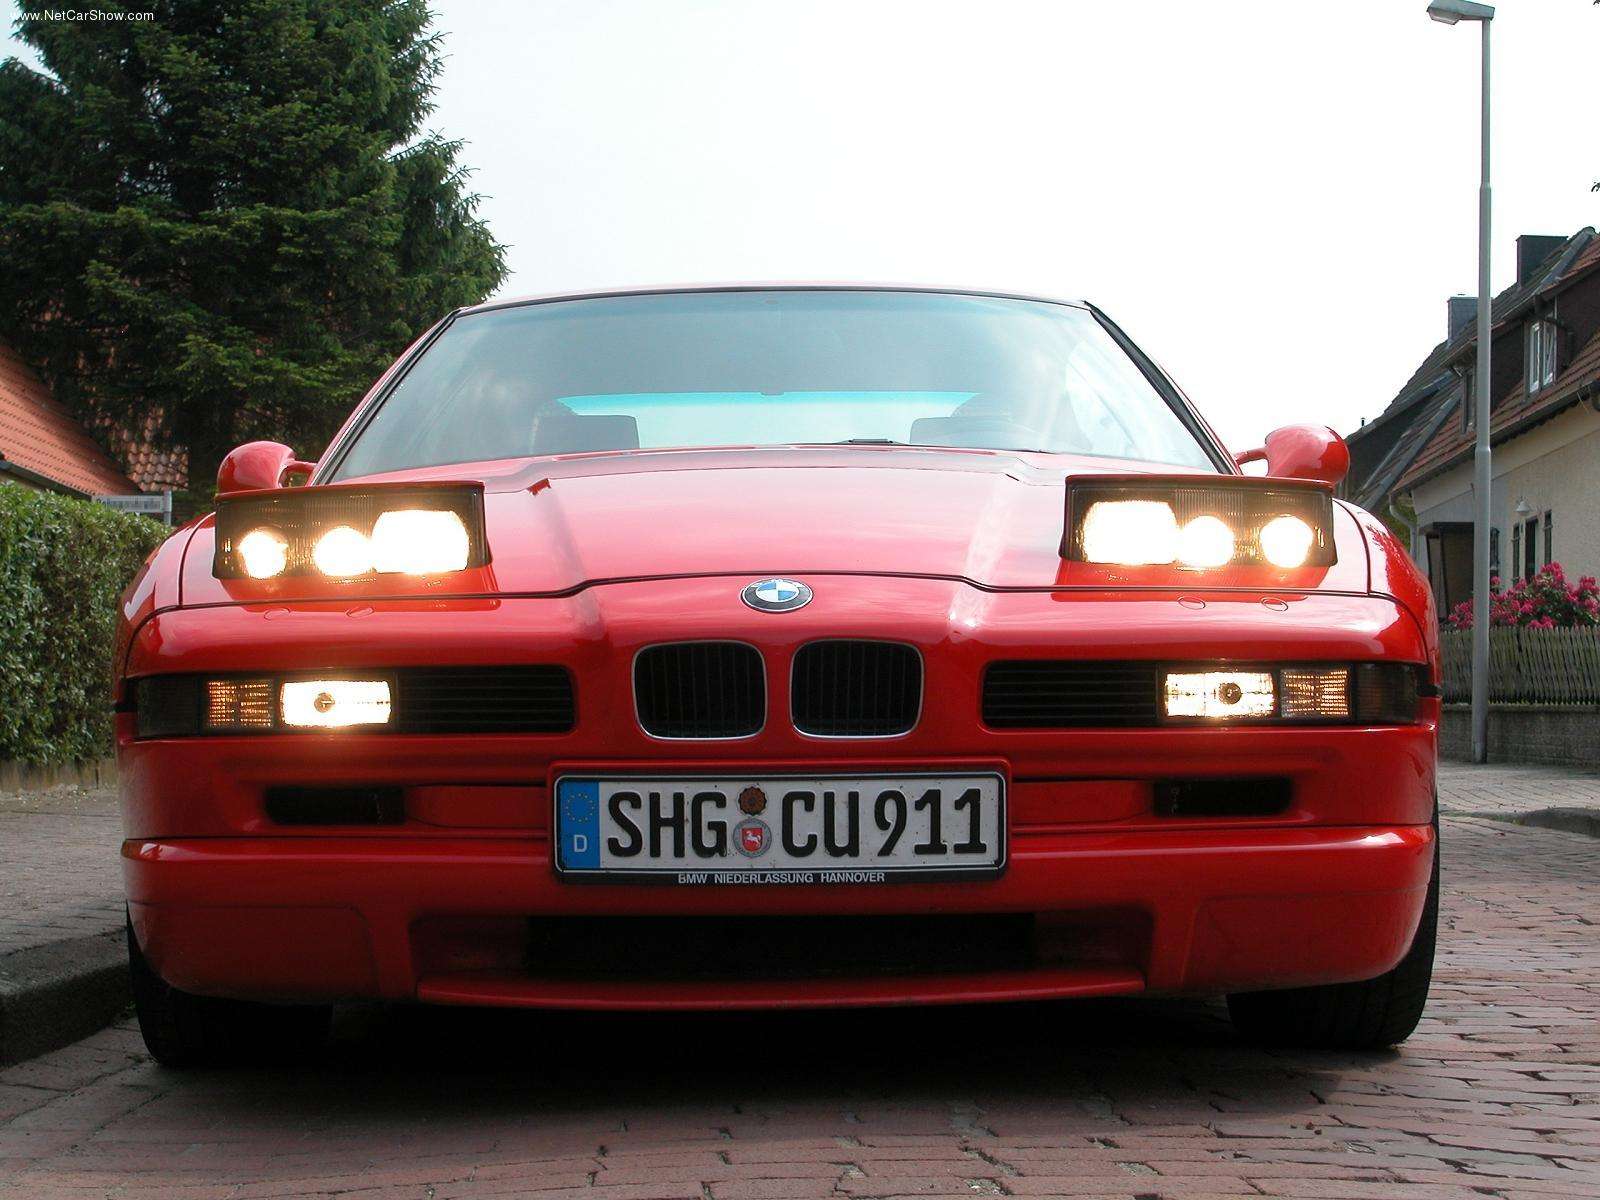 BMW-850CSi 1992 #14.jpg. Date: 09/06/2008. Size: 640x480, 1600x1200